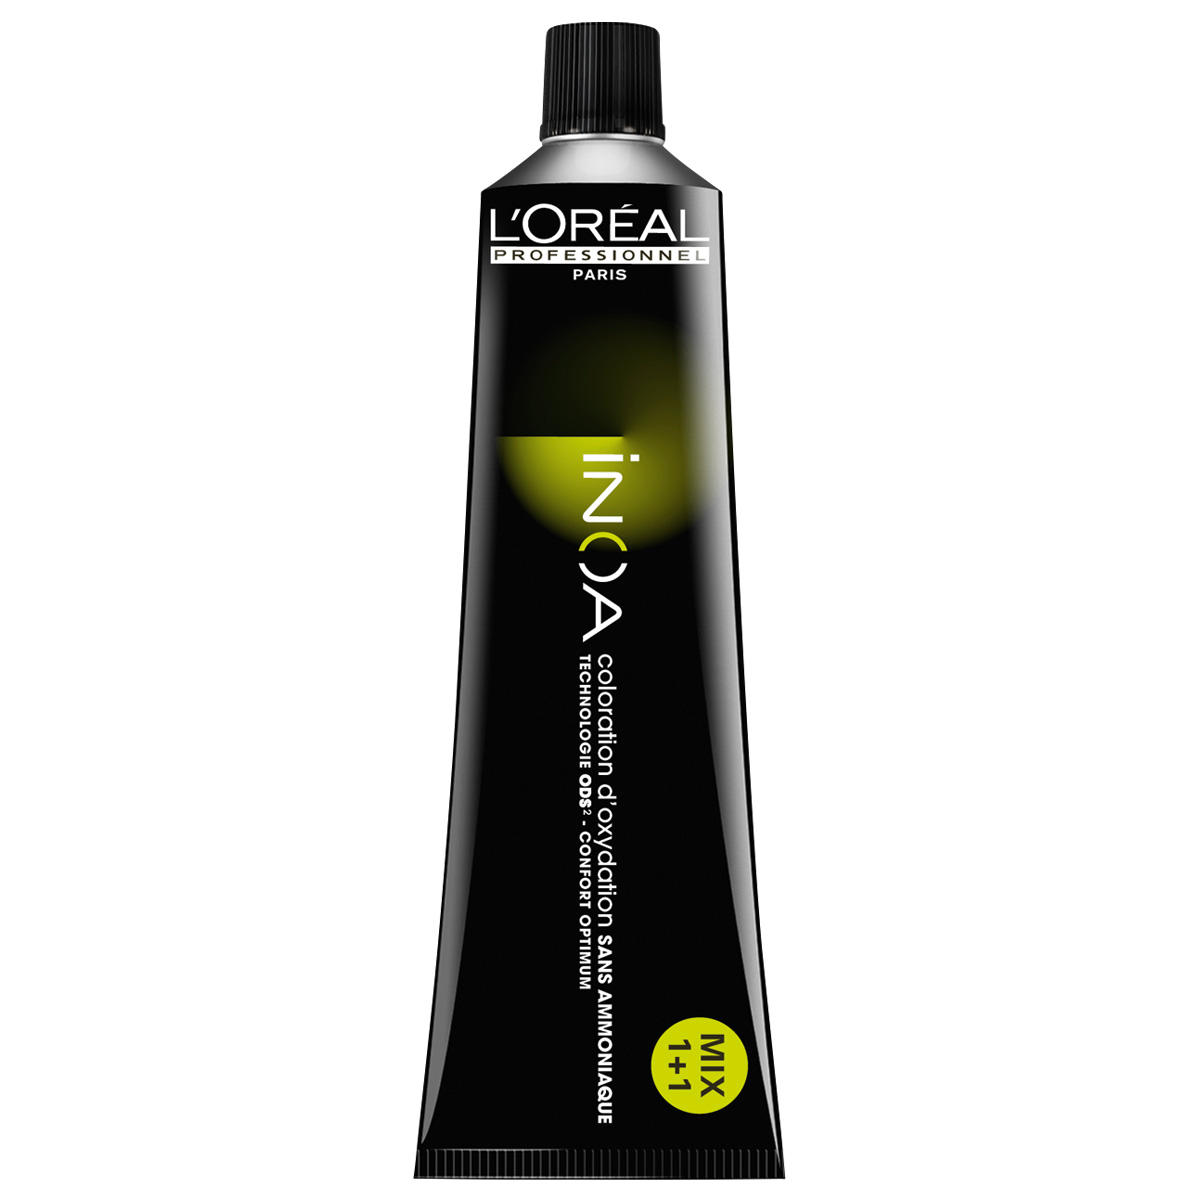 L'Oréal Professionnel Paris Coloration 10.31 Biondo platino cenere d'oro, tubo 60 ml